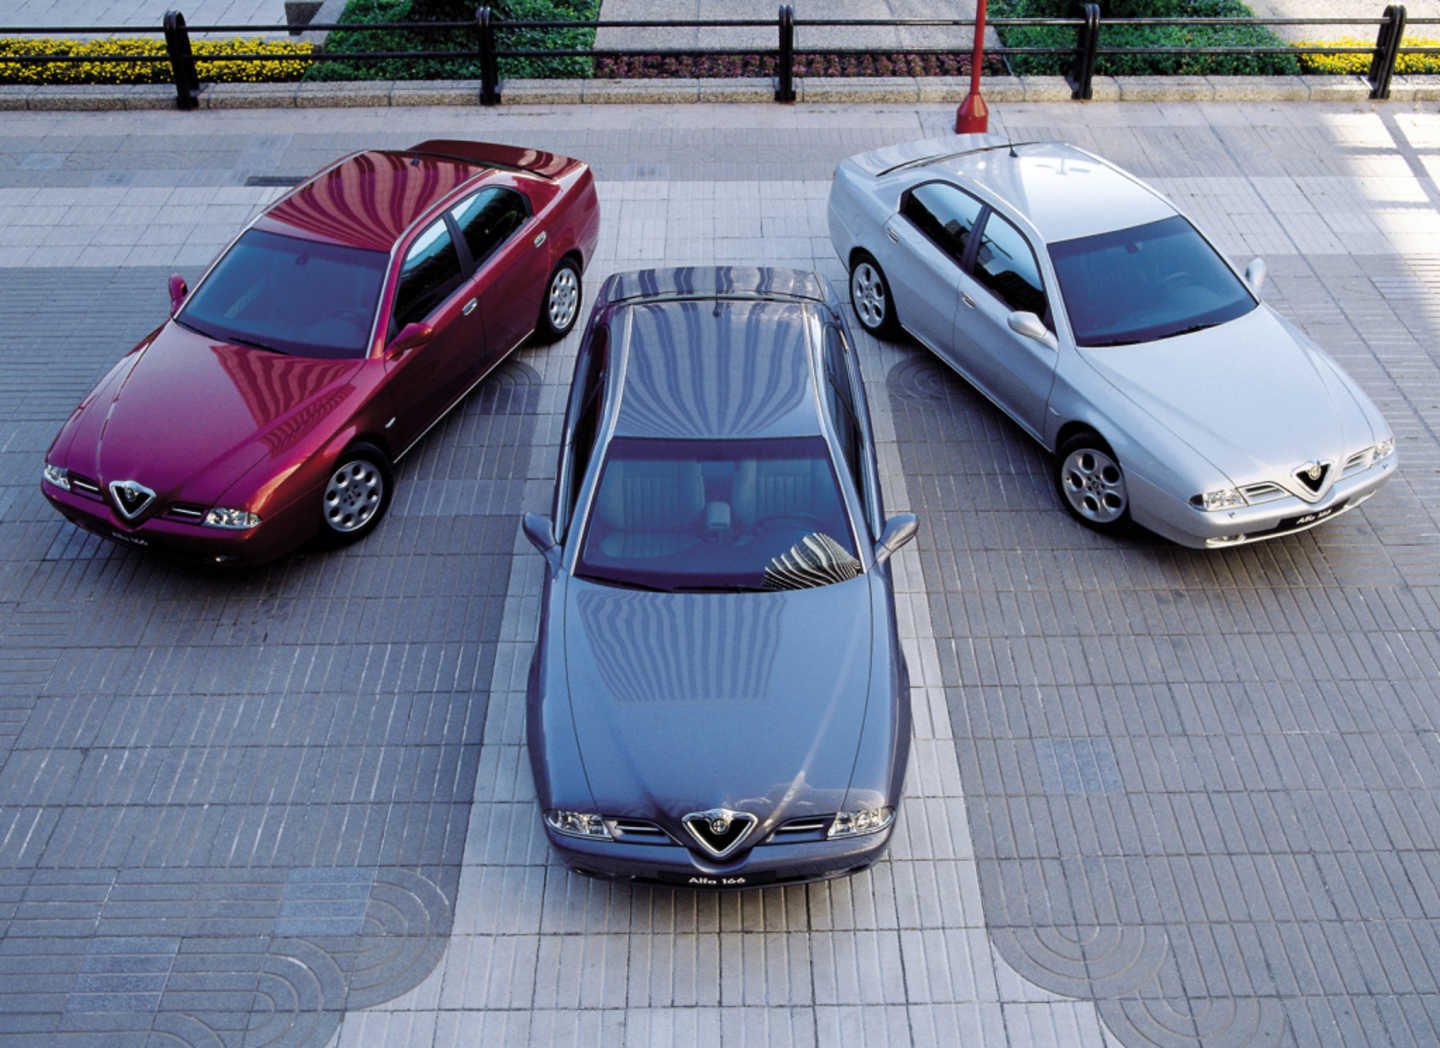 3 Alfa Romeo 166 avec 3 couleurs différentes vue du dessus